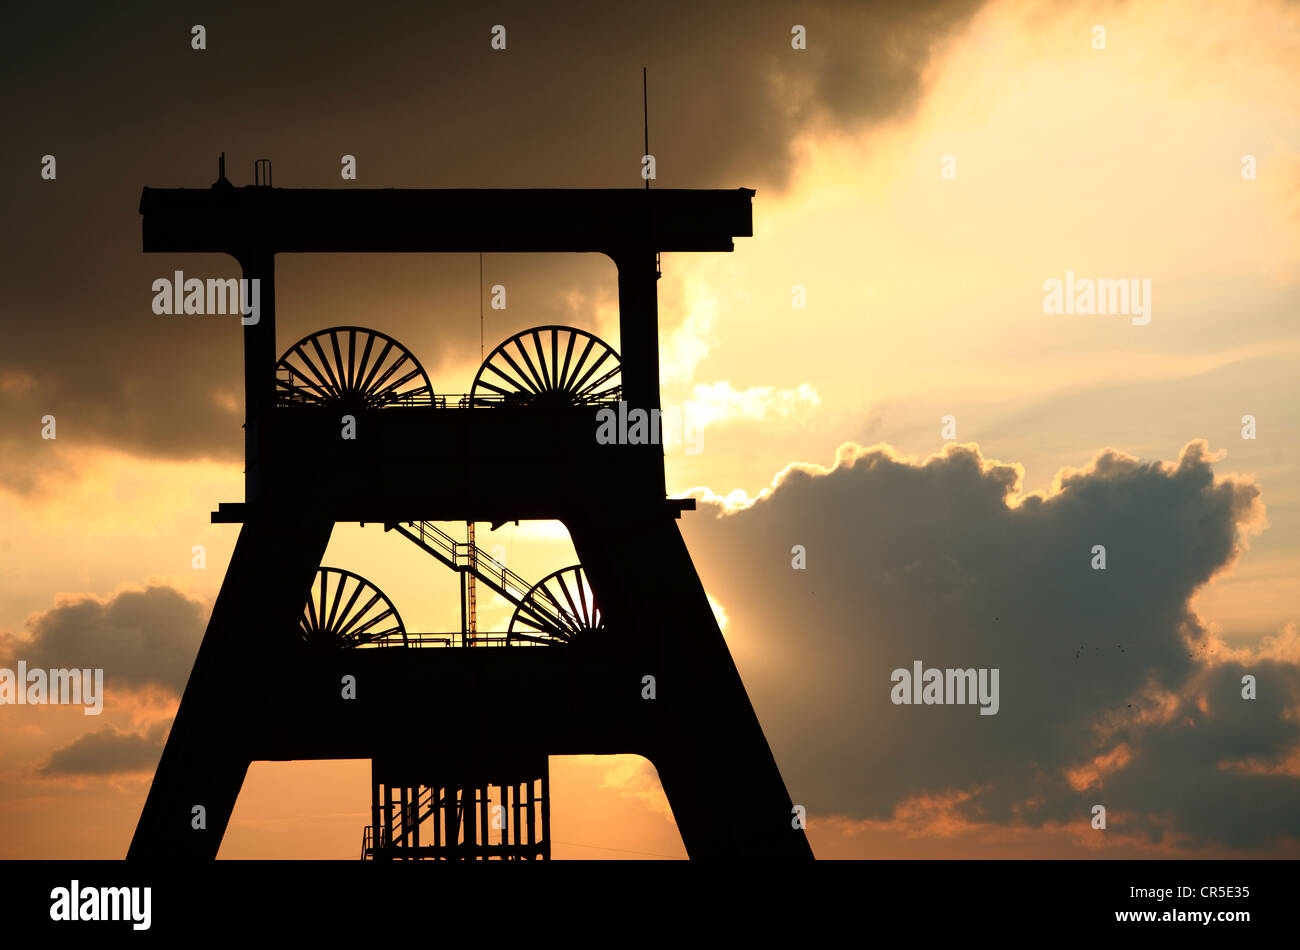 Torre di avvolgimento di un ex miniera di carbone, tramonto, dark sky, nuvole. Simbolo per la fine delle miniere di carbone della Ruhr, Germania. Foto Stock